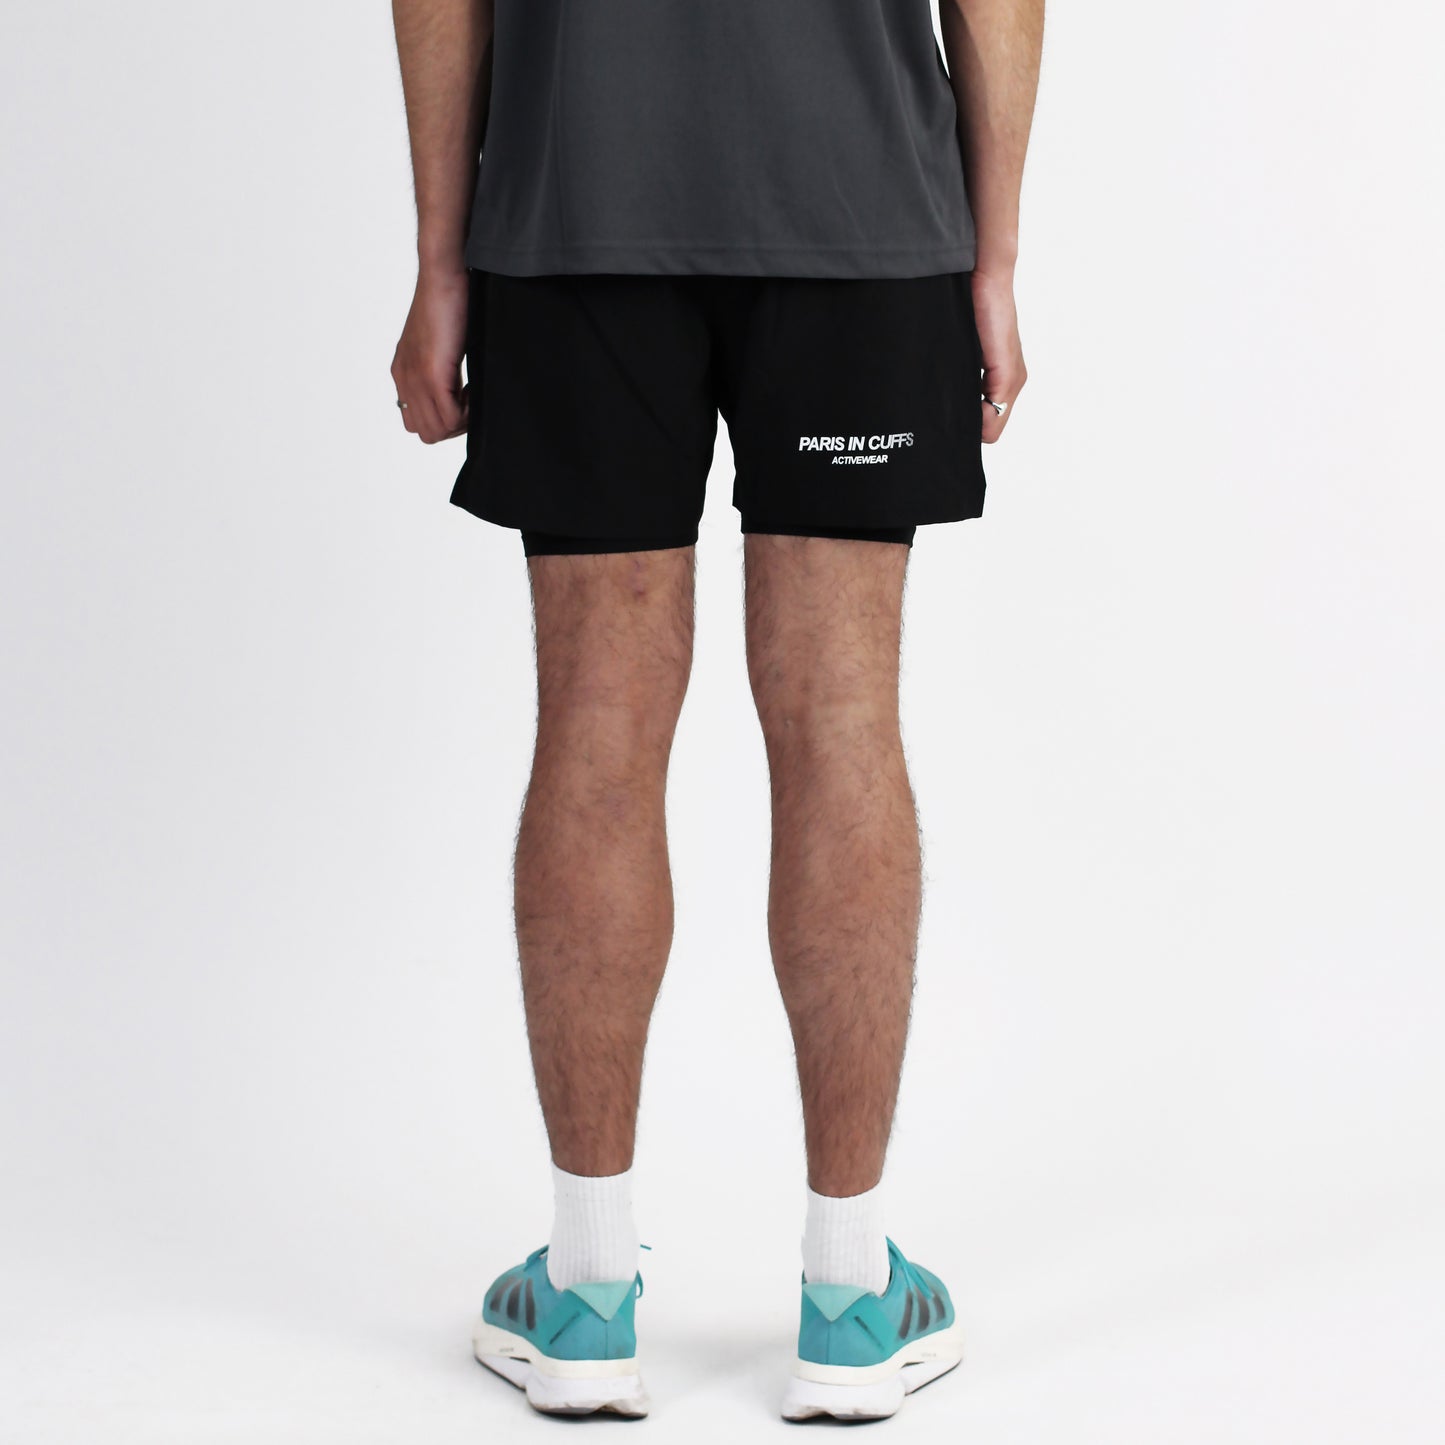 SS24 Black Running Shorts